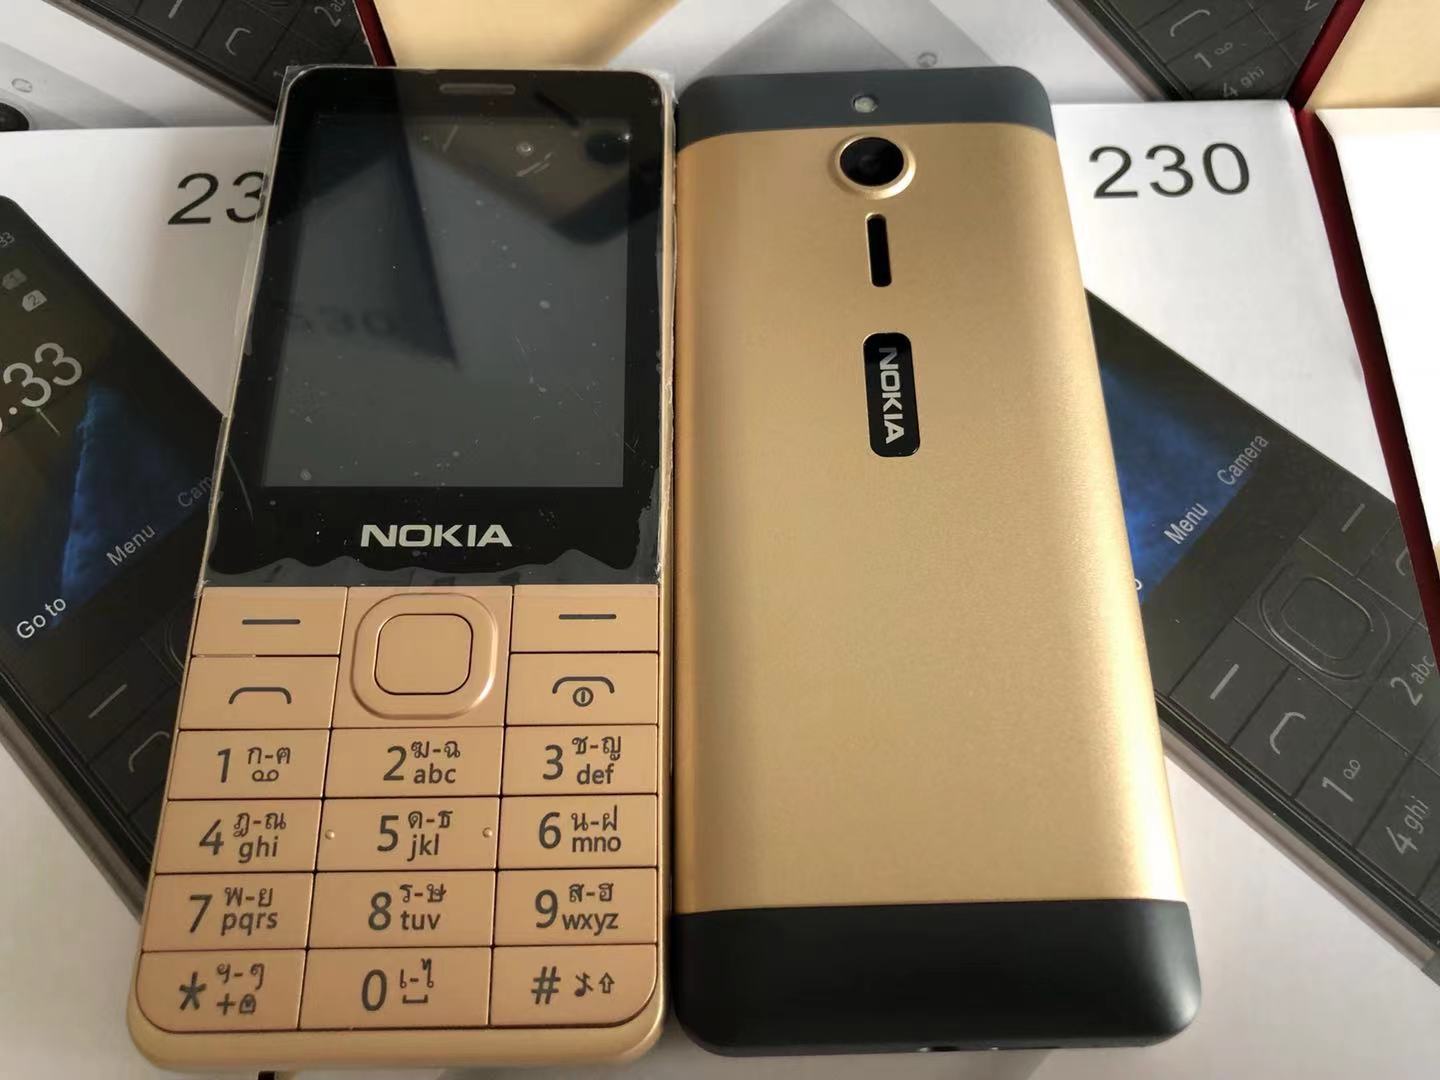 เกี่ยวกับ โทรศัพท์มือถือปุ่มกด Nokia 230 แท้ 4G ใหม่ล่าสุด ปุ่มกดไทย เมนูไทย，มือถือโนเกีย 230 จอใหญ่ 2.8’จอใหญ่กว่า